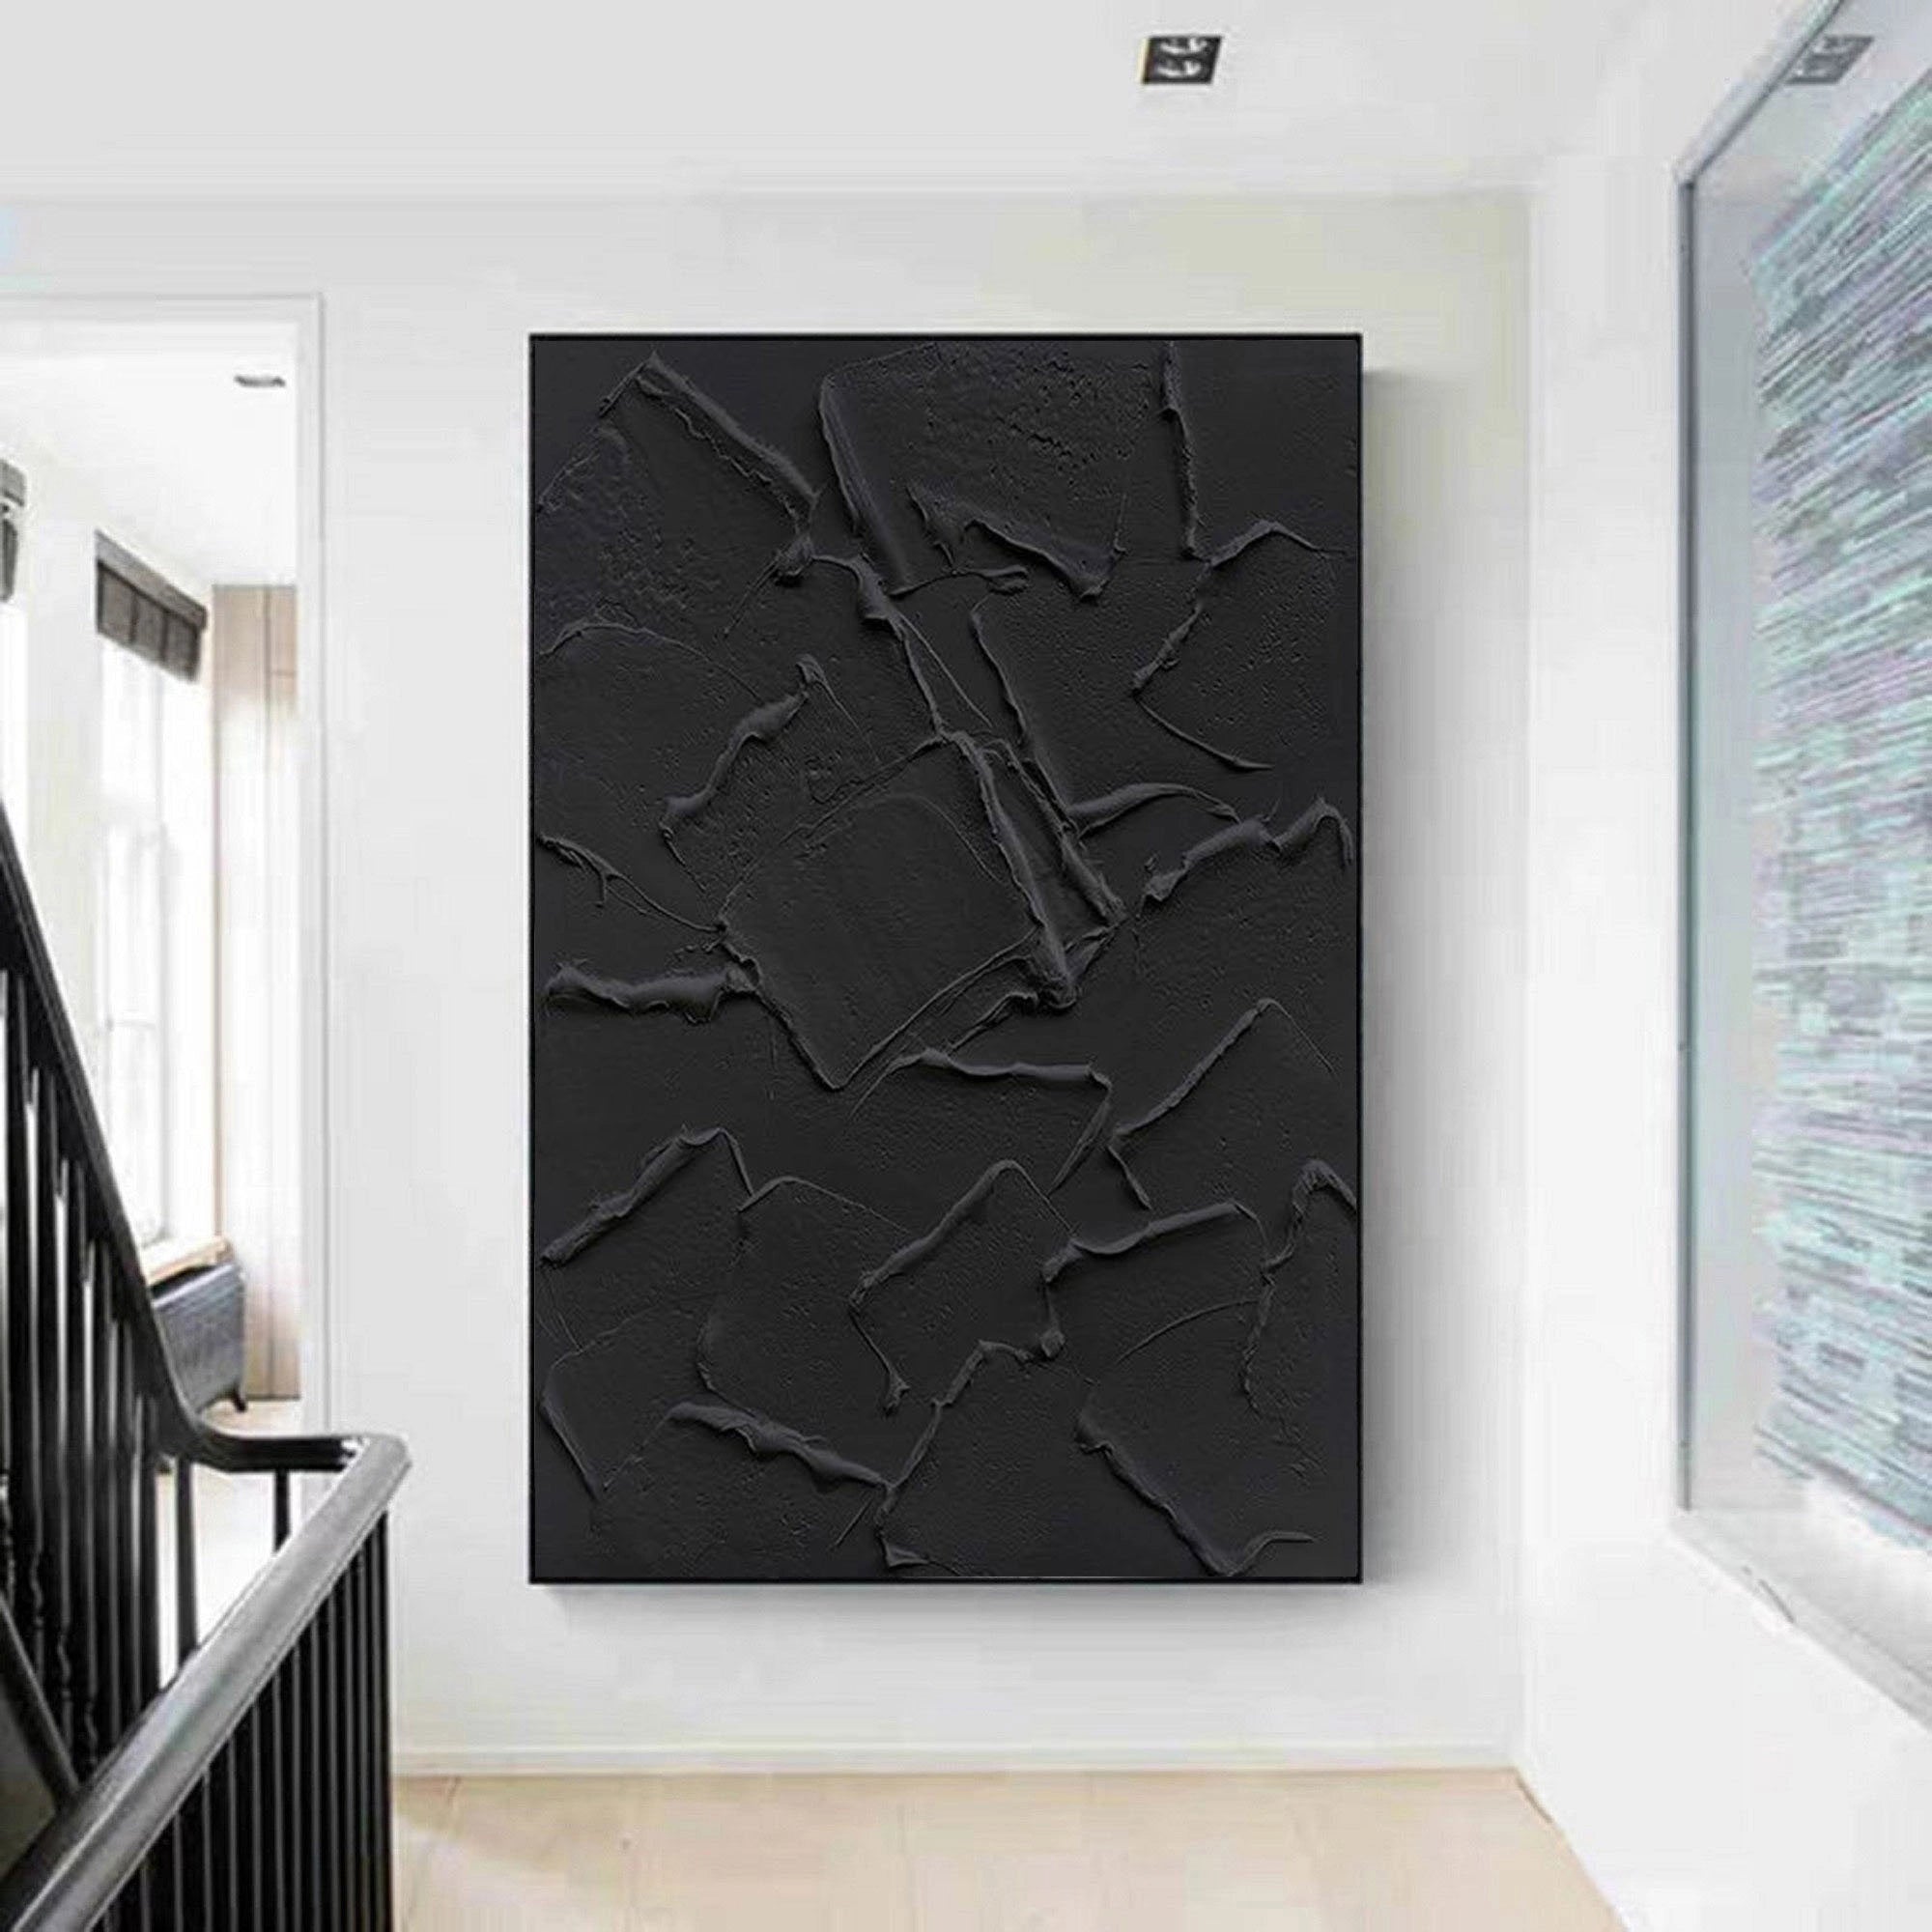 Black Textured Plaster Art Ocean Wave Minimalist Painting on Canvas